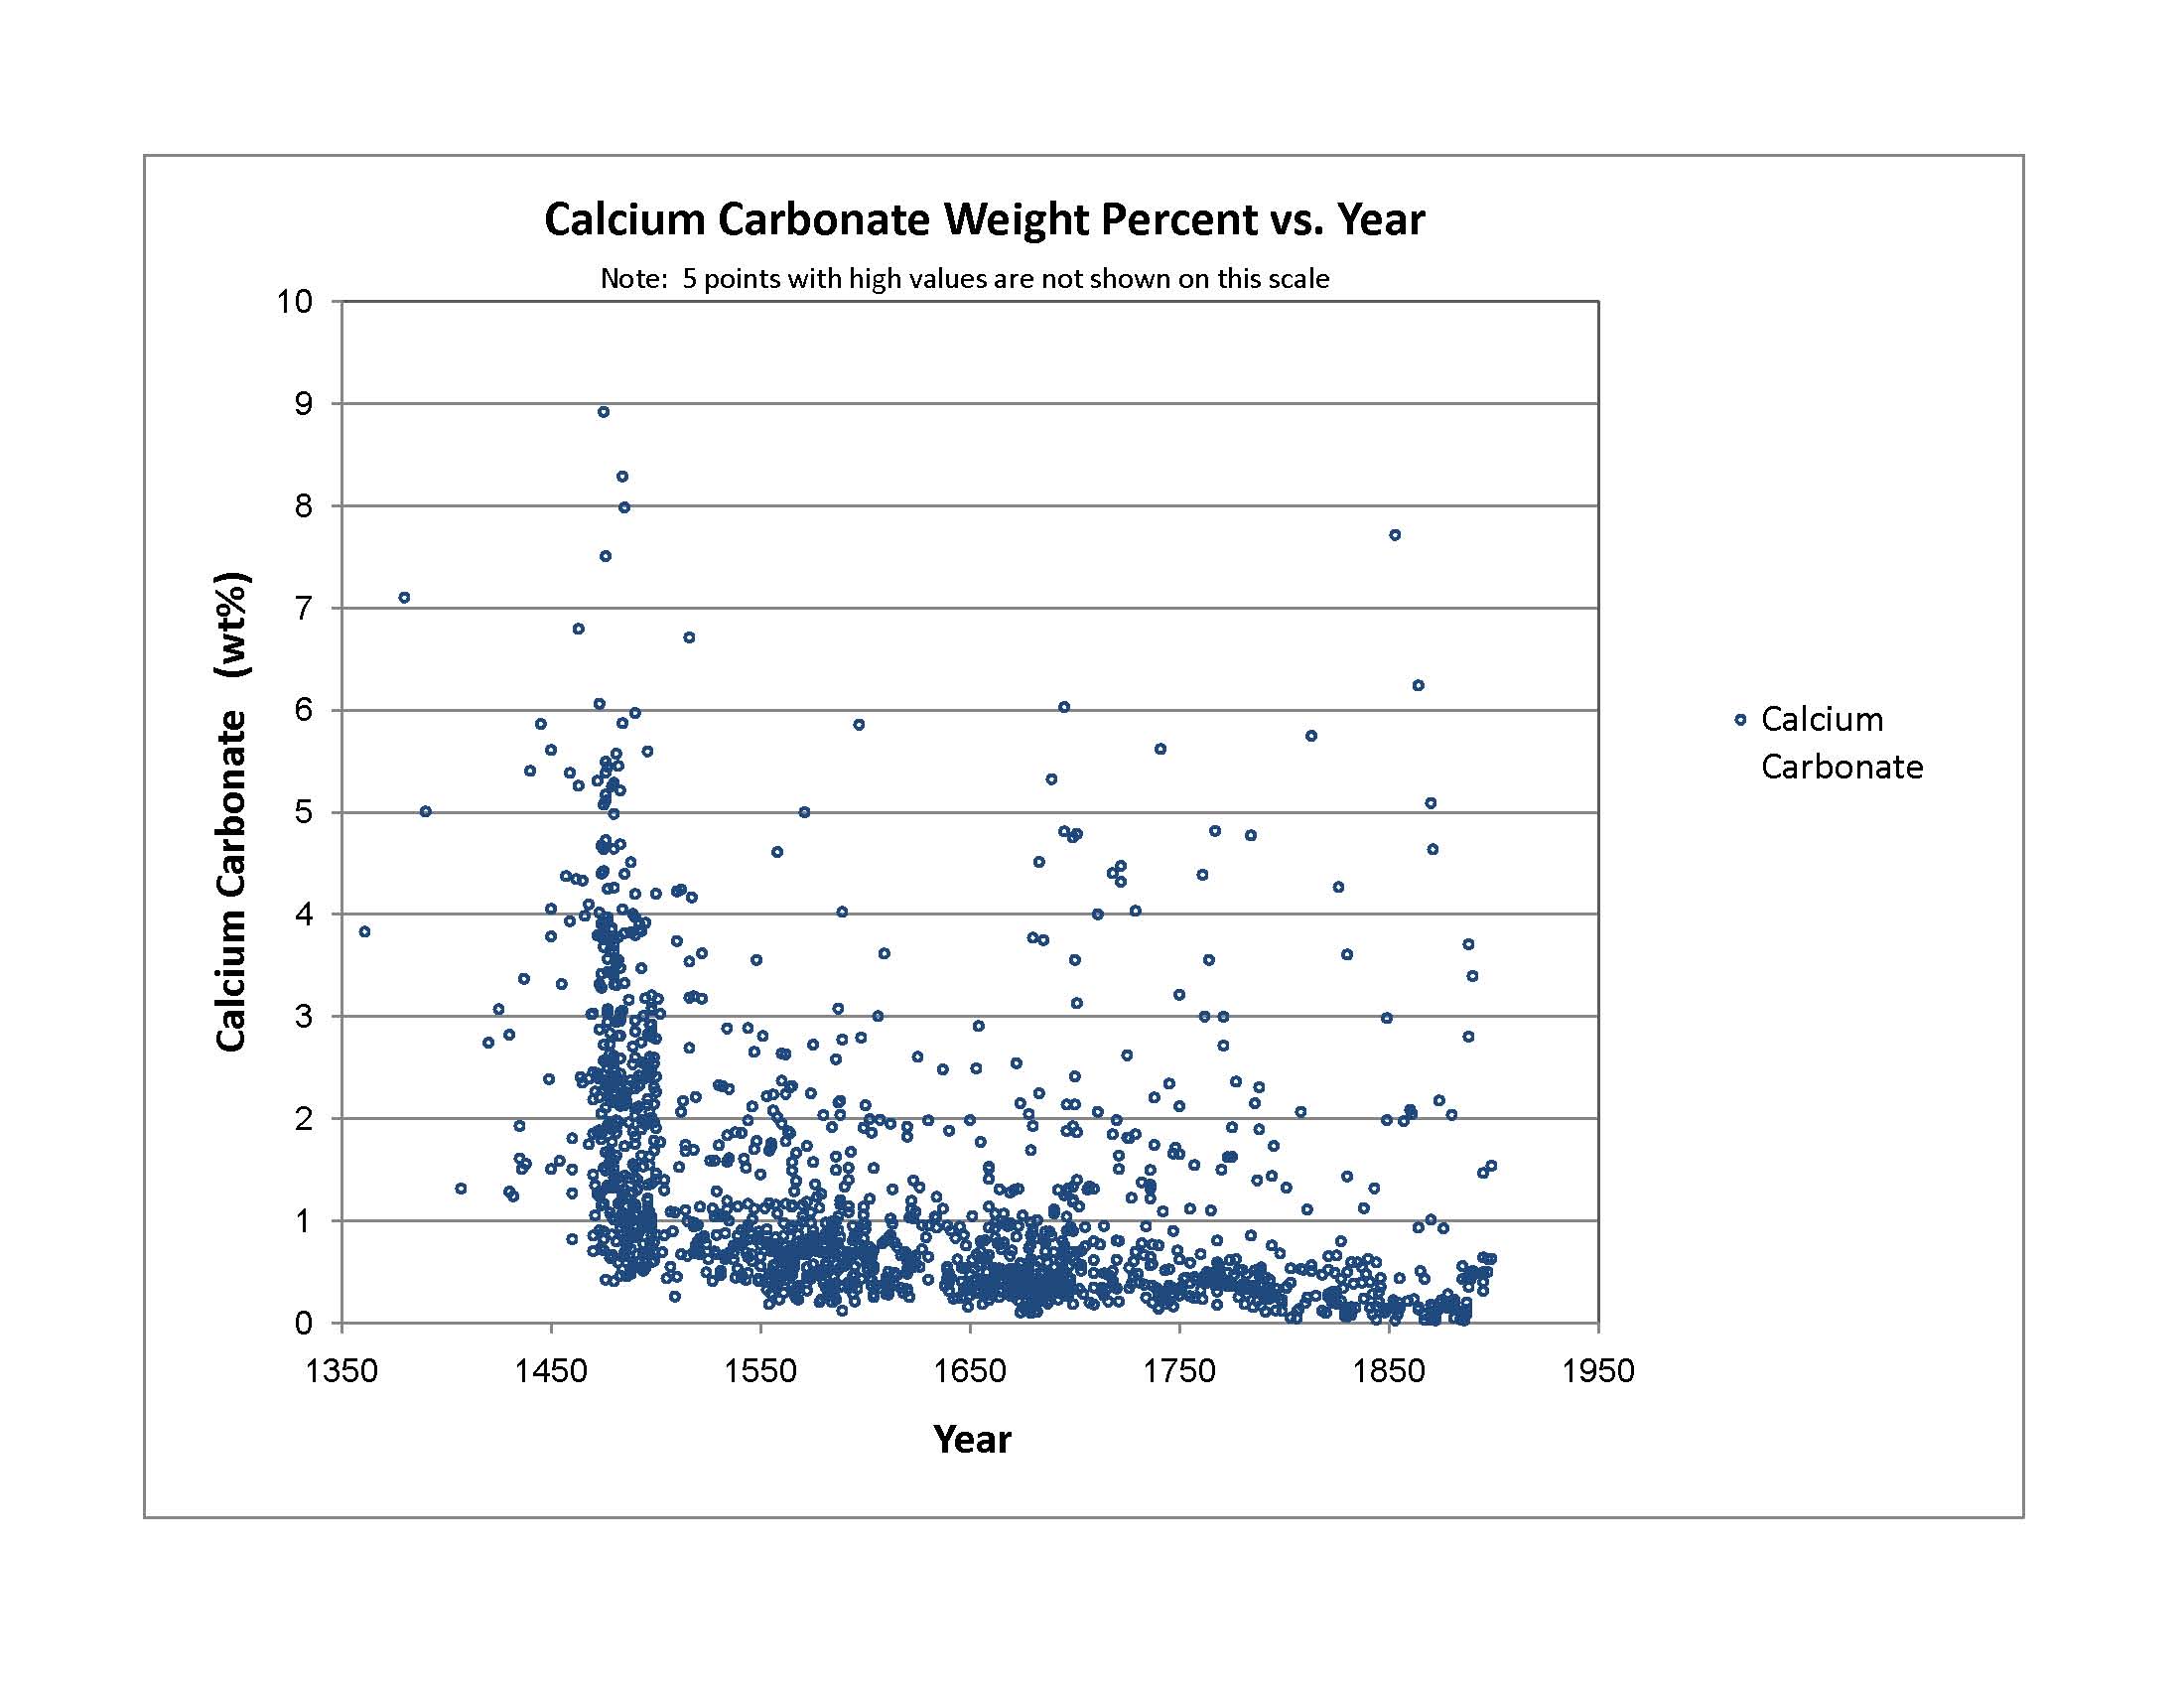 Plot 12: Calcium Carbonate